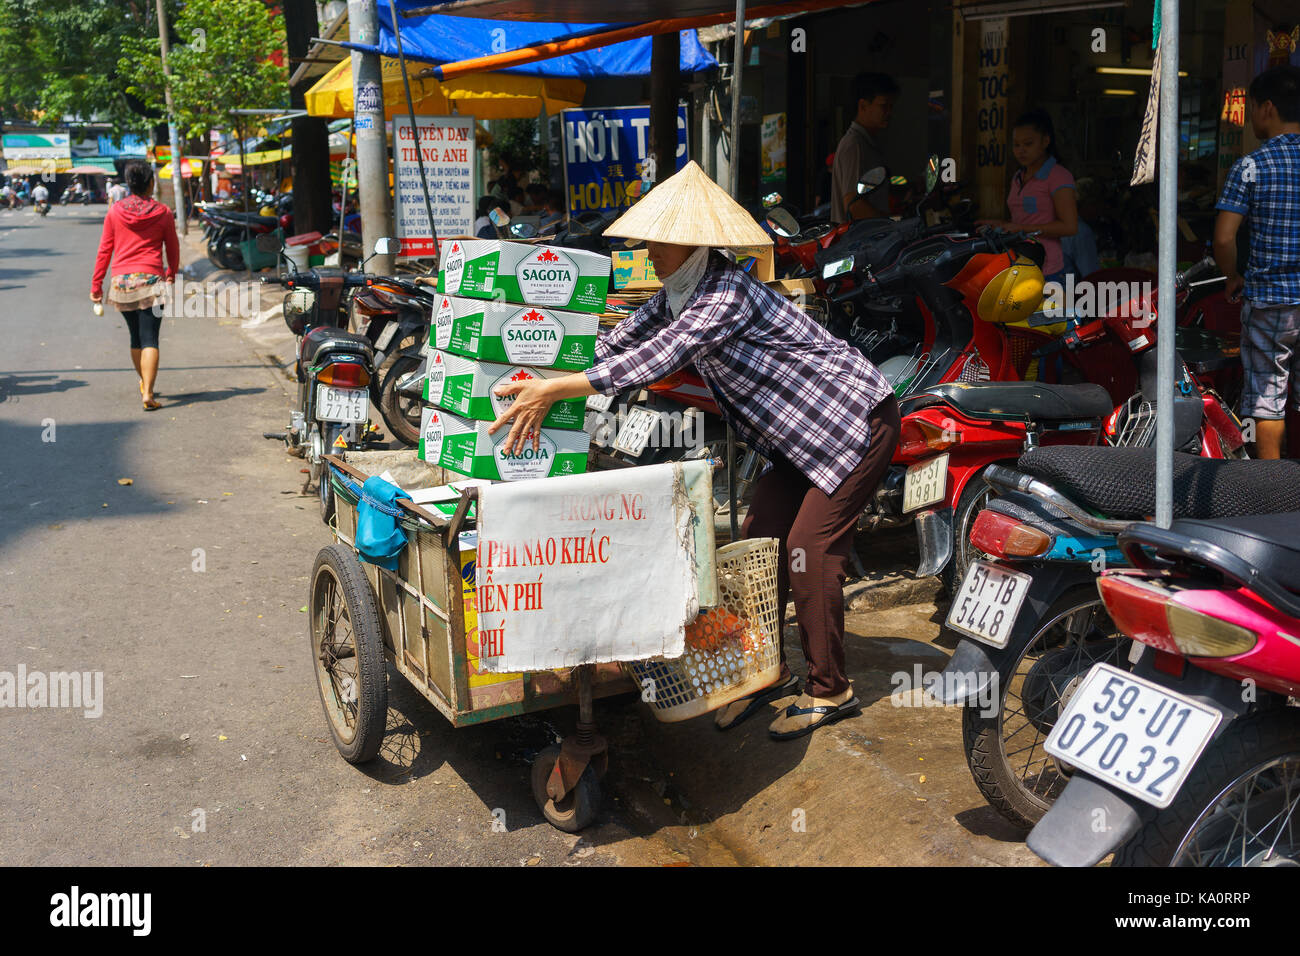 SAIGON, VIETNAM - October 16, 2014: A garbage collector collecting carton boxes on a small street, Saigon, Vietnam Stock Photo